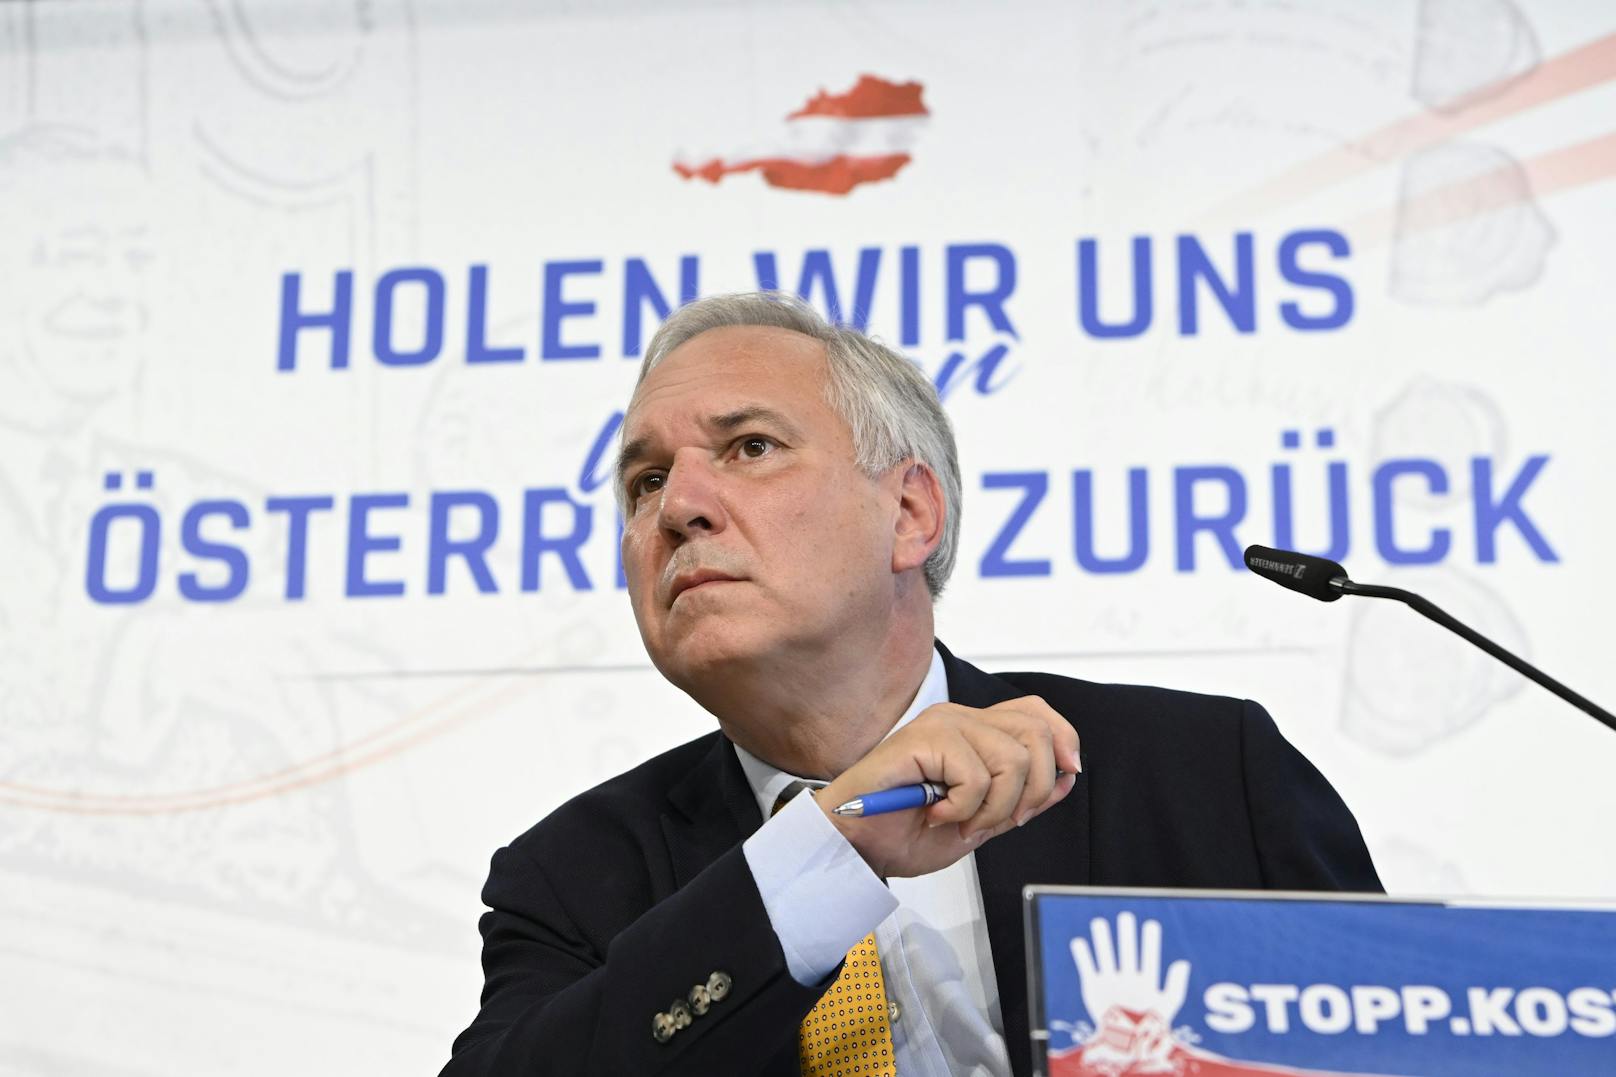 FPÖ-Kandidat Walter Rosenkranz am 9. August 2022 im Rahmen einer Pressekonferenz.